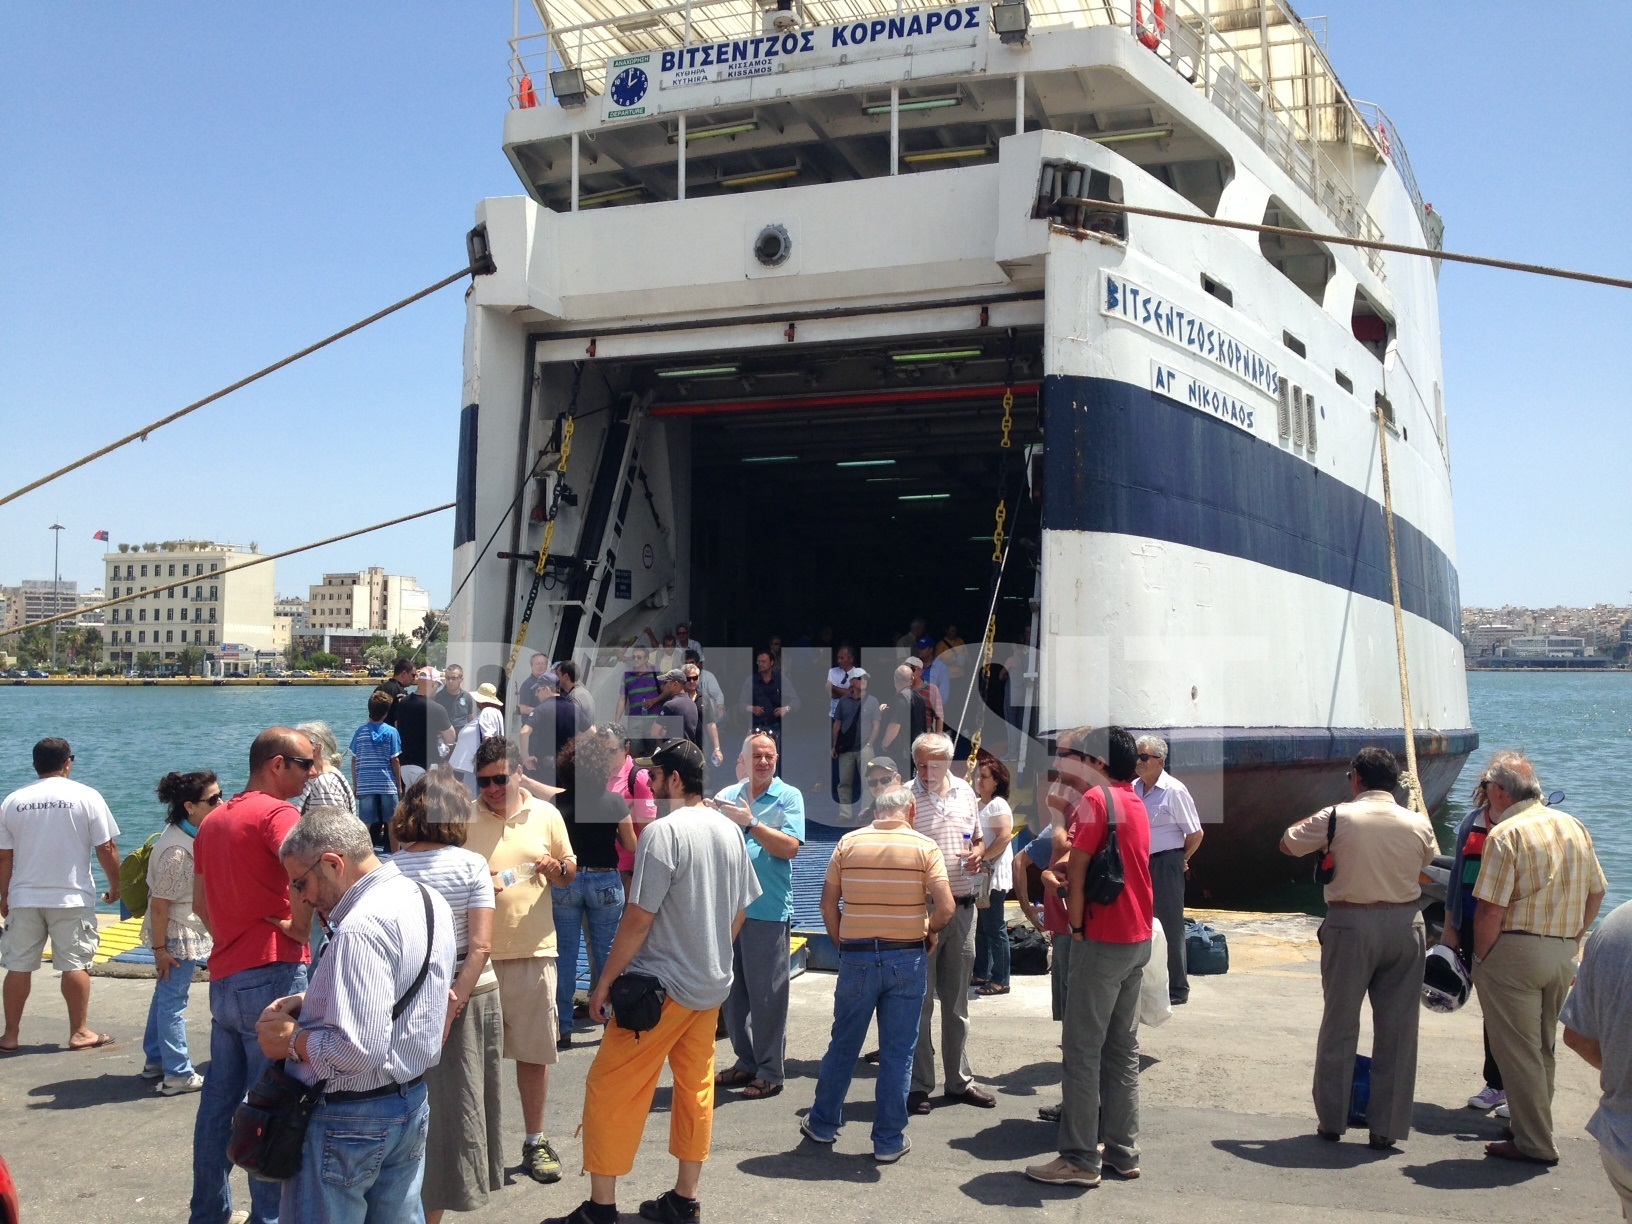 Ένταση μεταξύ ναυτεργατών και επιβατών στον Πειραιά – Μπλόκα σε “Βιτσέντζος Κορνάρος”, “Άγιος Γεώργιος” (ΦΩΤΟ)